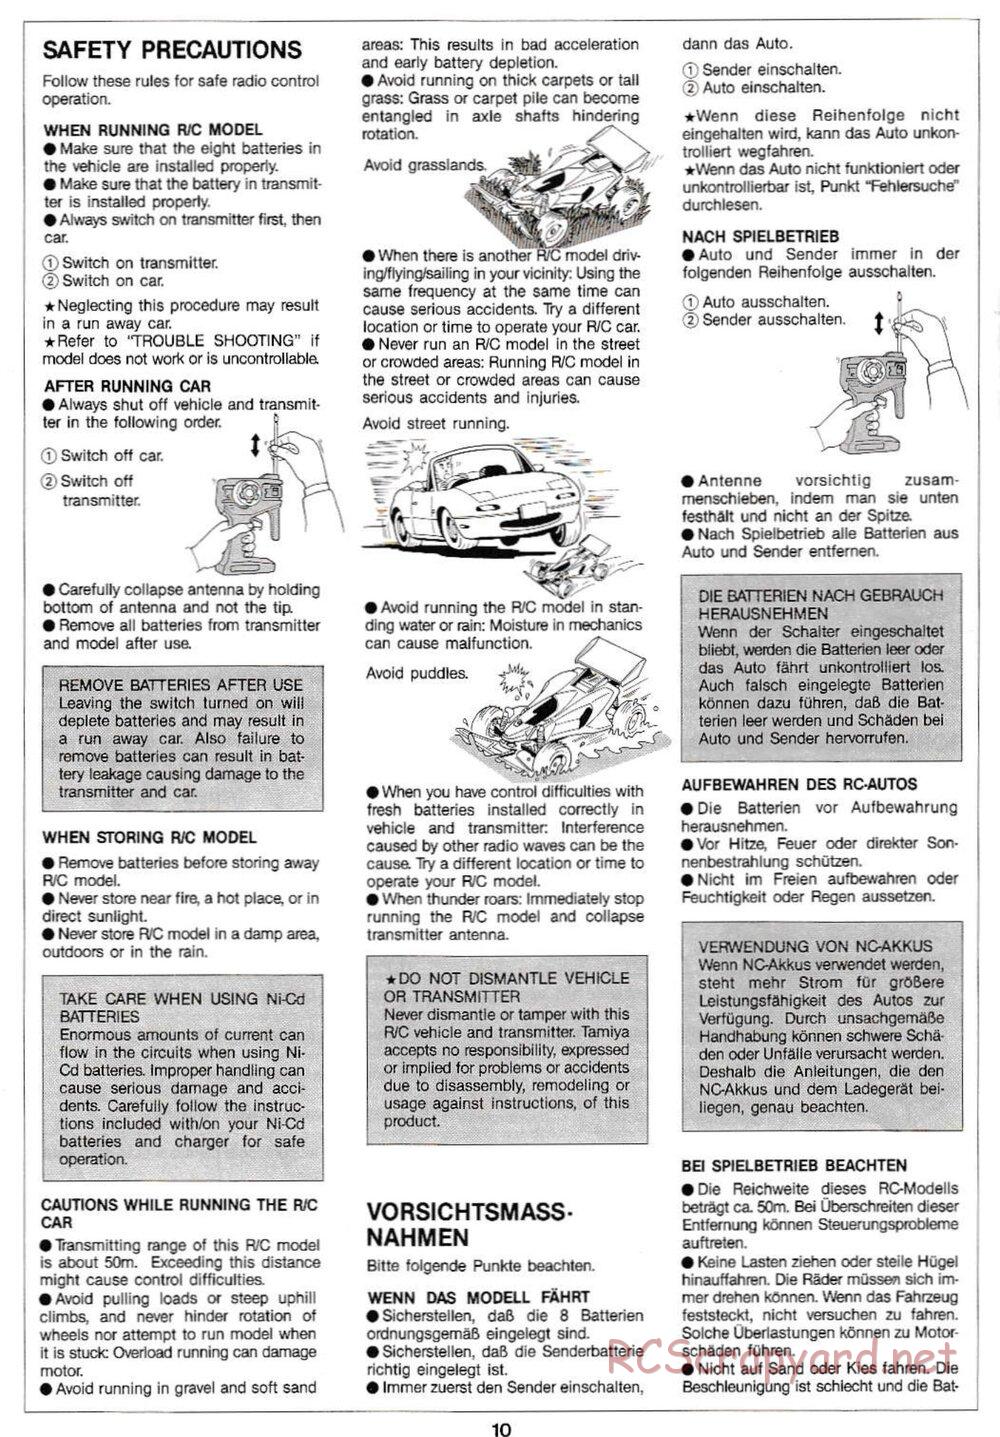 Tamiya - Manta Ray QD Chassis - Manual - Page 10